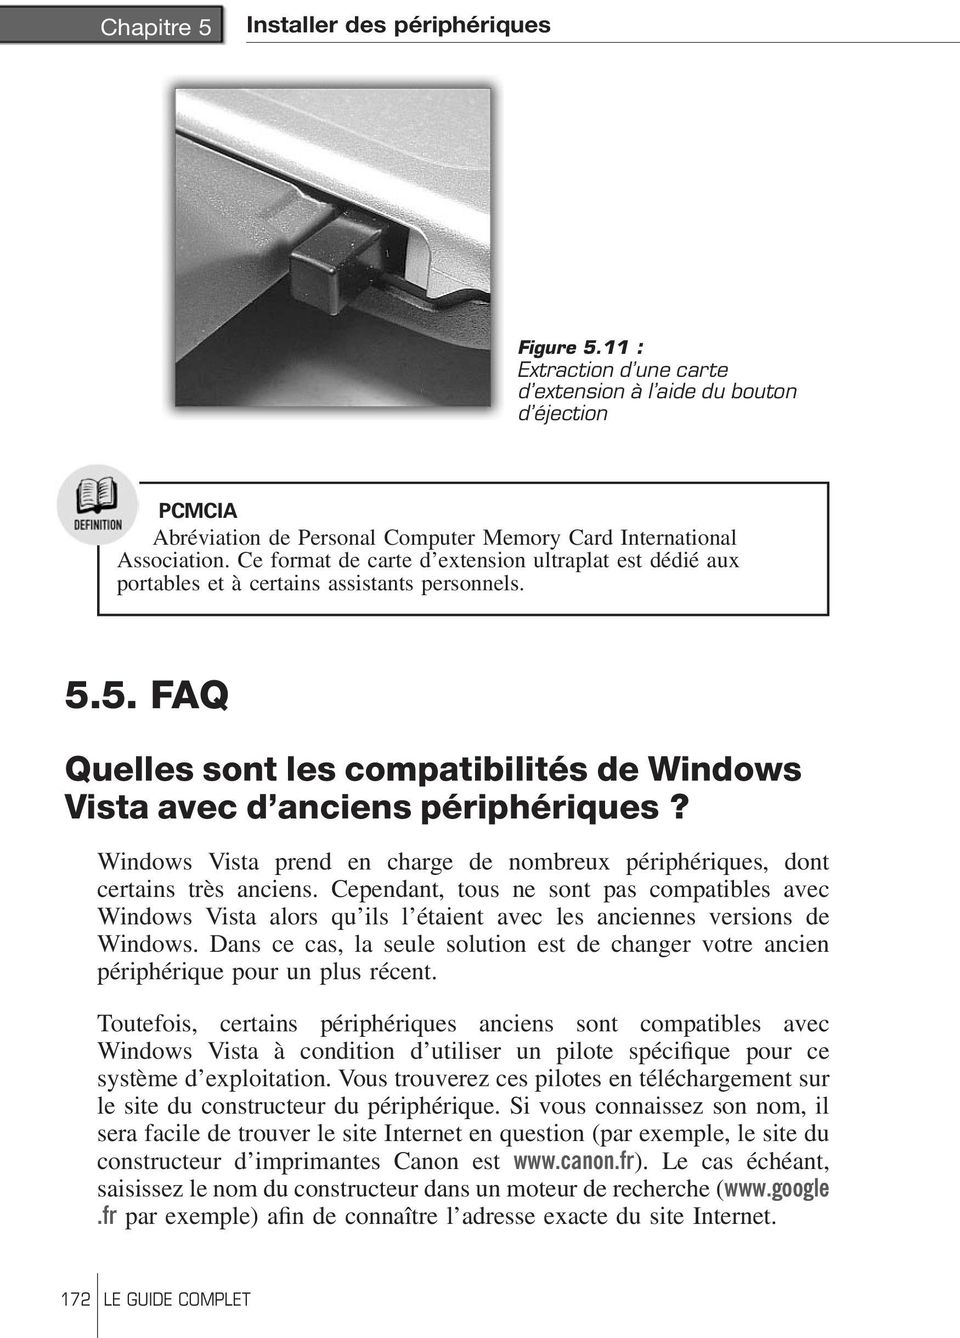 Windows Vista prend en charge de nombreux périphériques, dont certains très anciens.